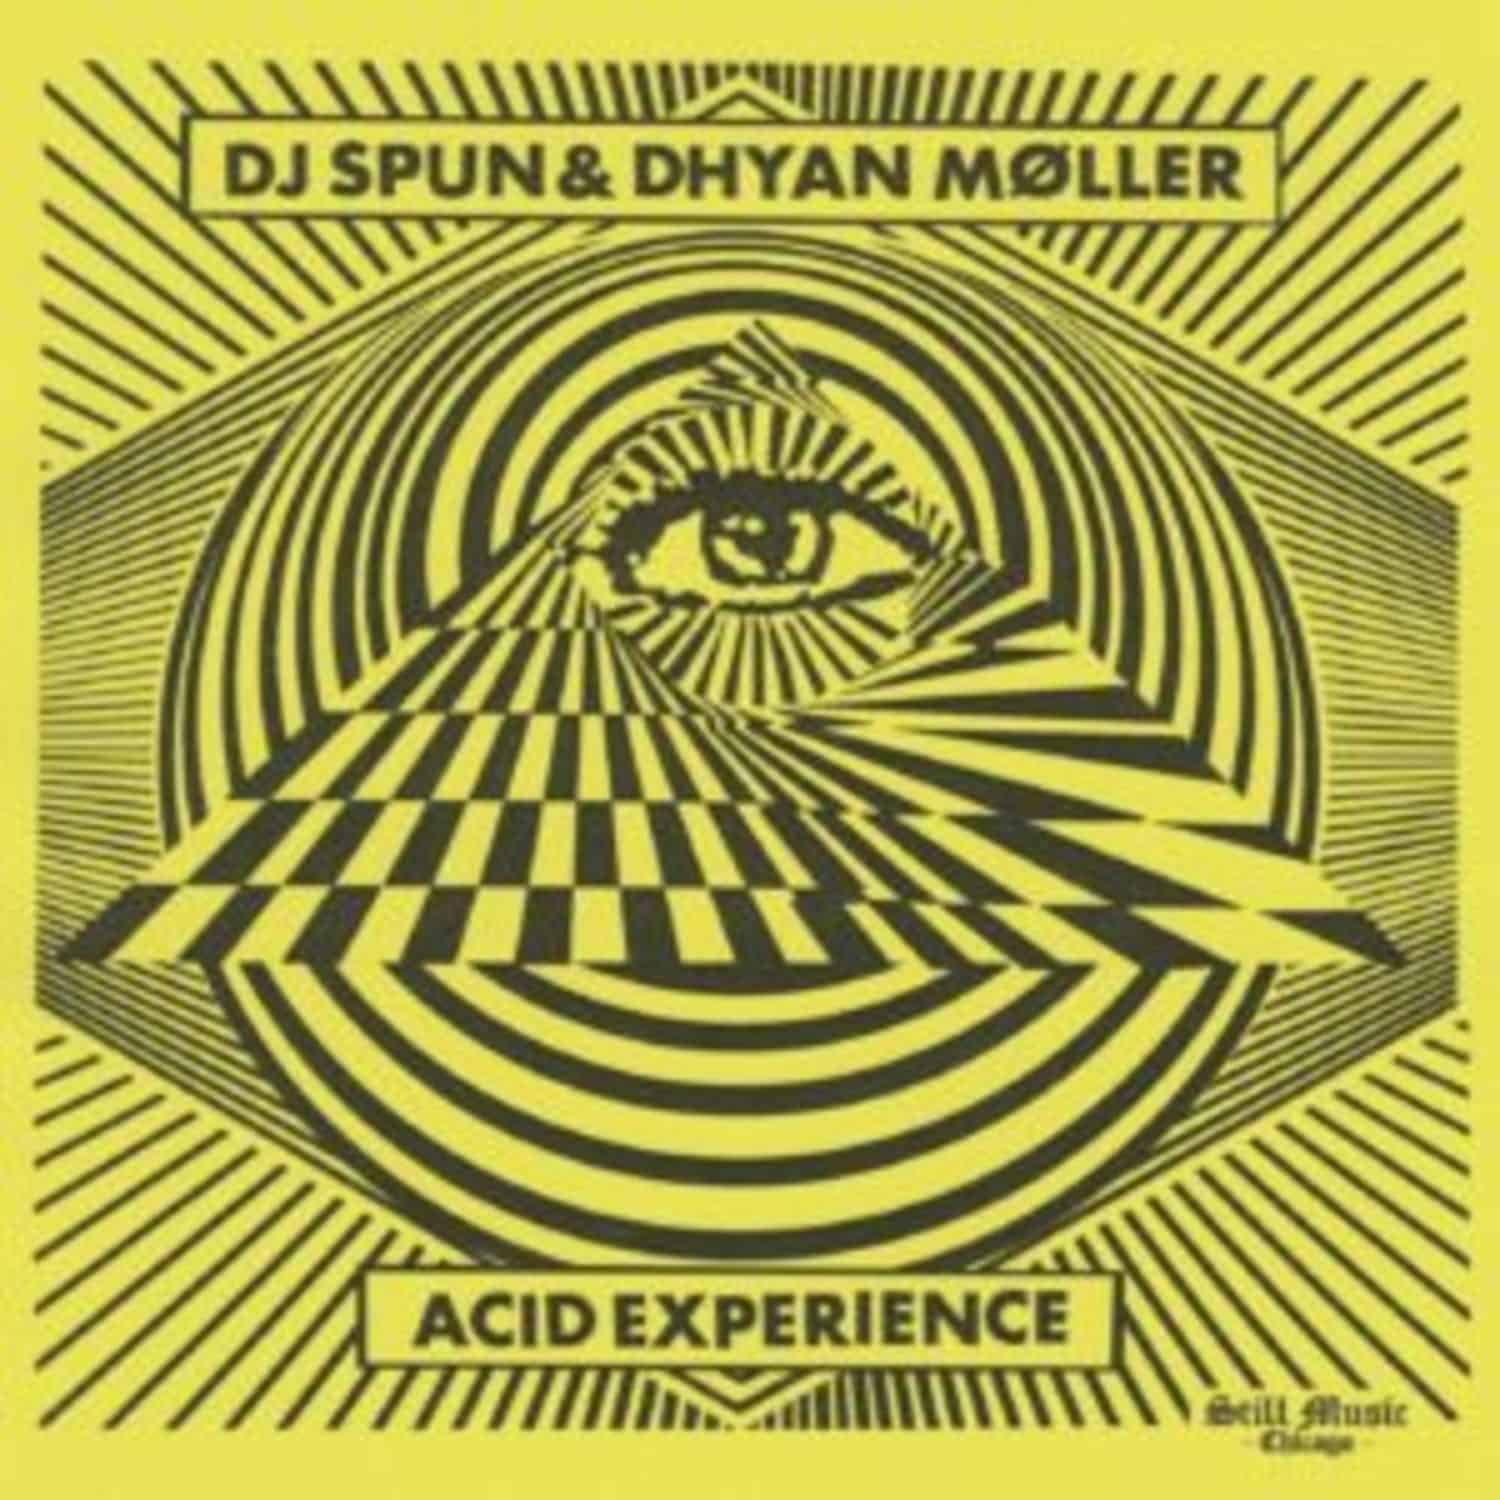 DJ Spun & Dhyan Moller - ACID EXPERIENCE 